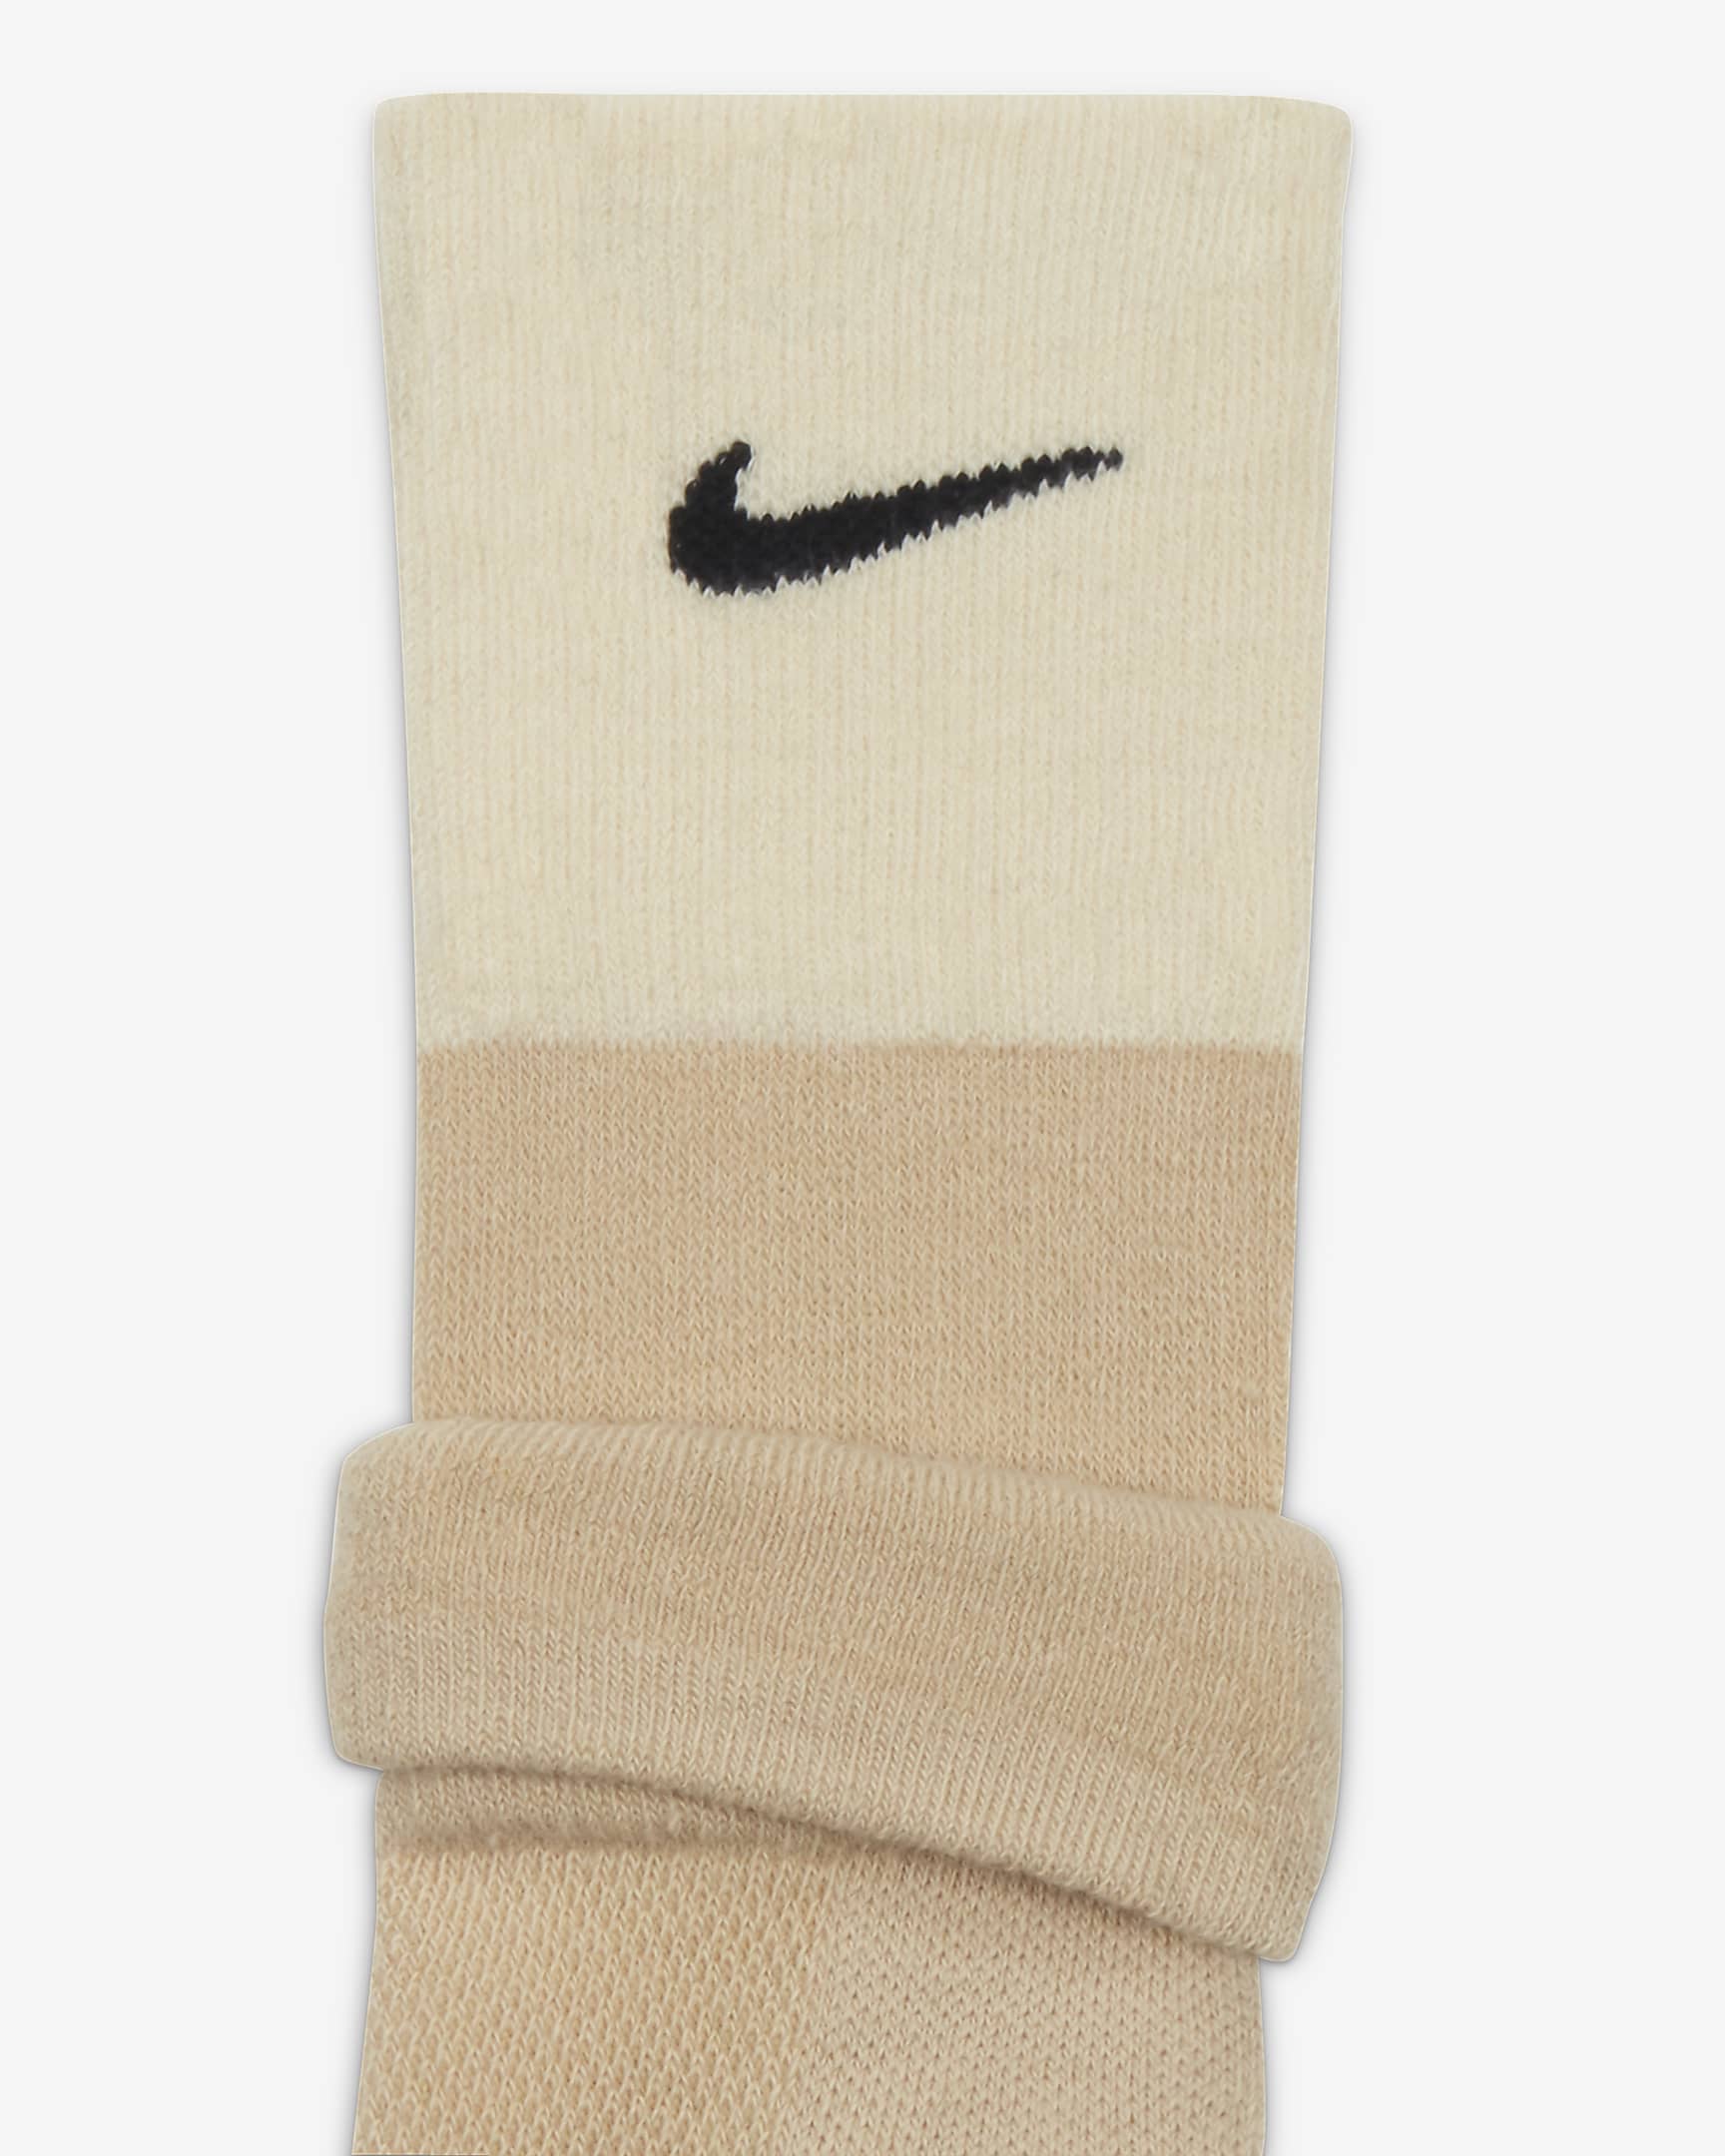 Nike x MMW Socks. Nike SG